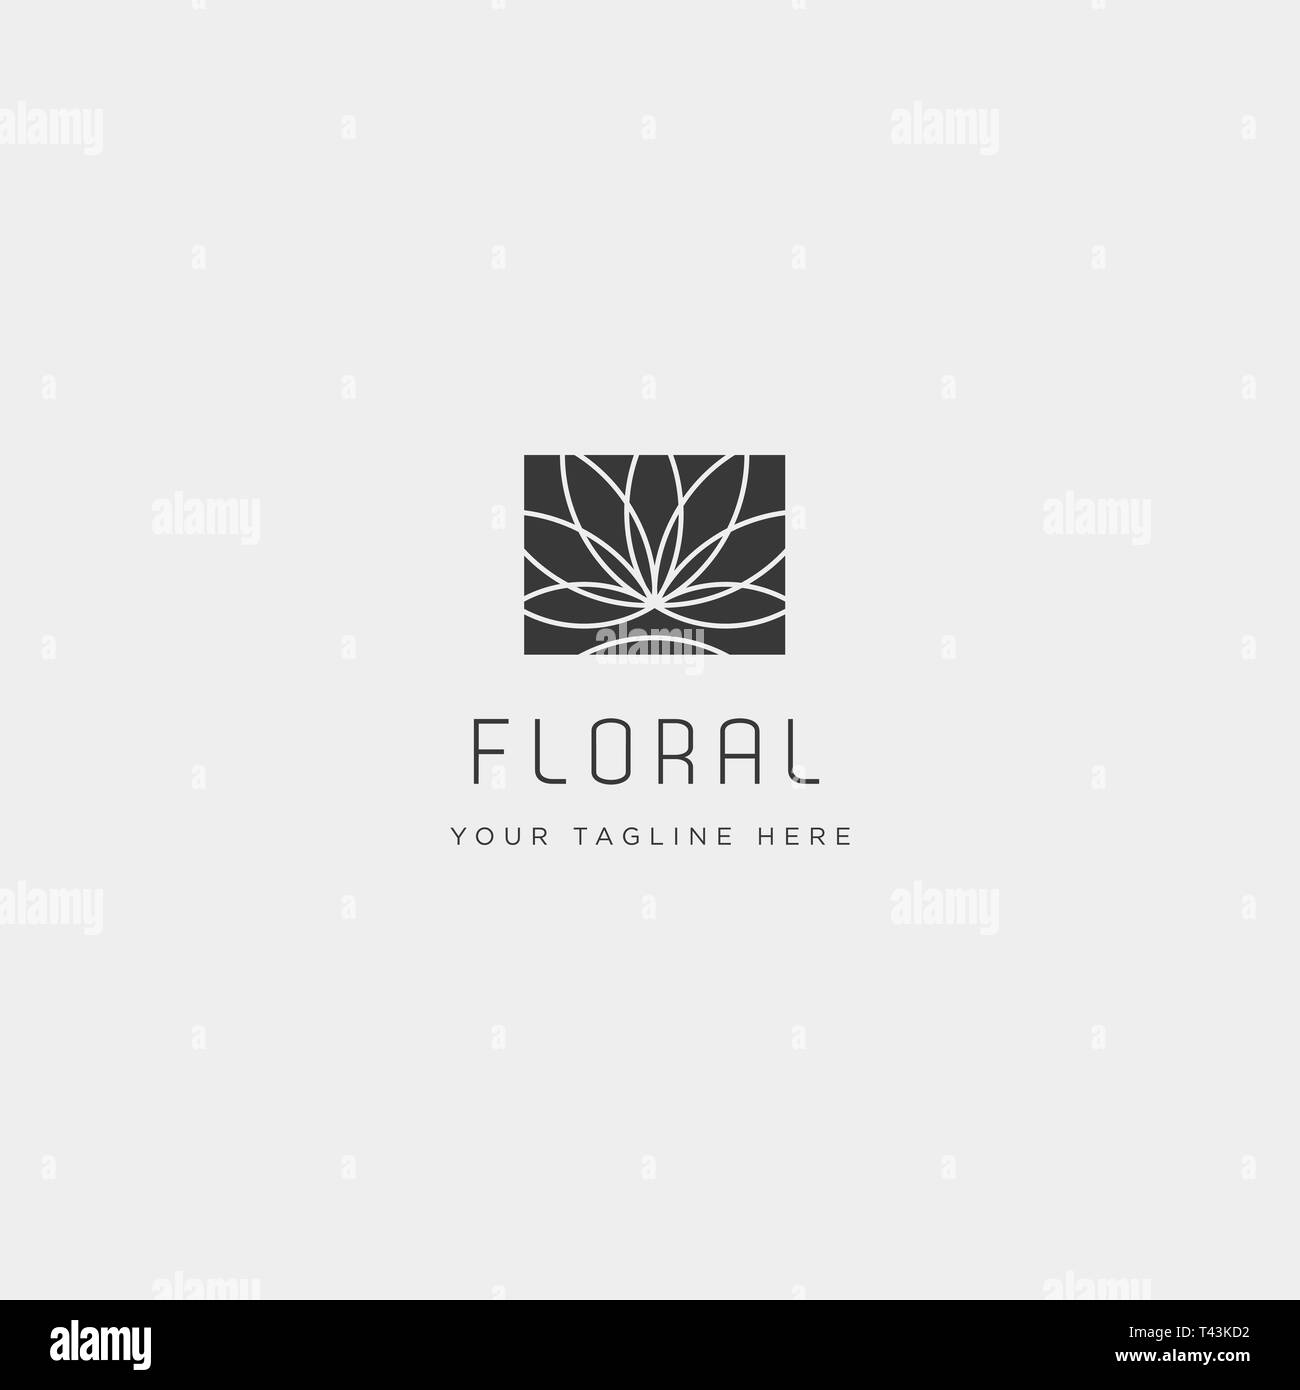 Flower floral linea premium di bellezza semplice modello di logo Illustrazione Vettoriale